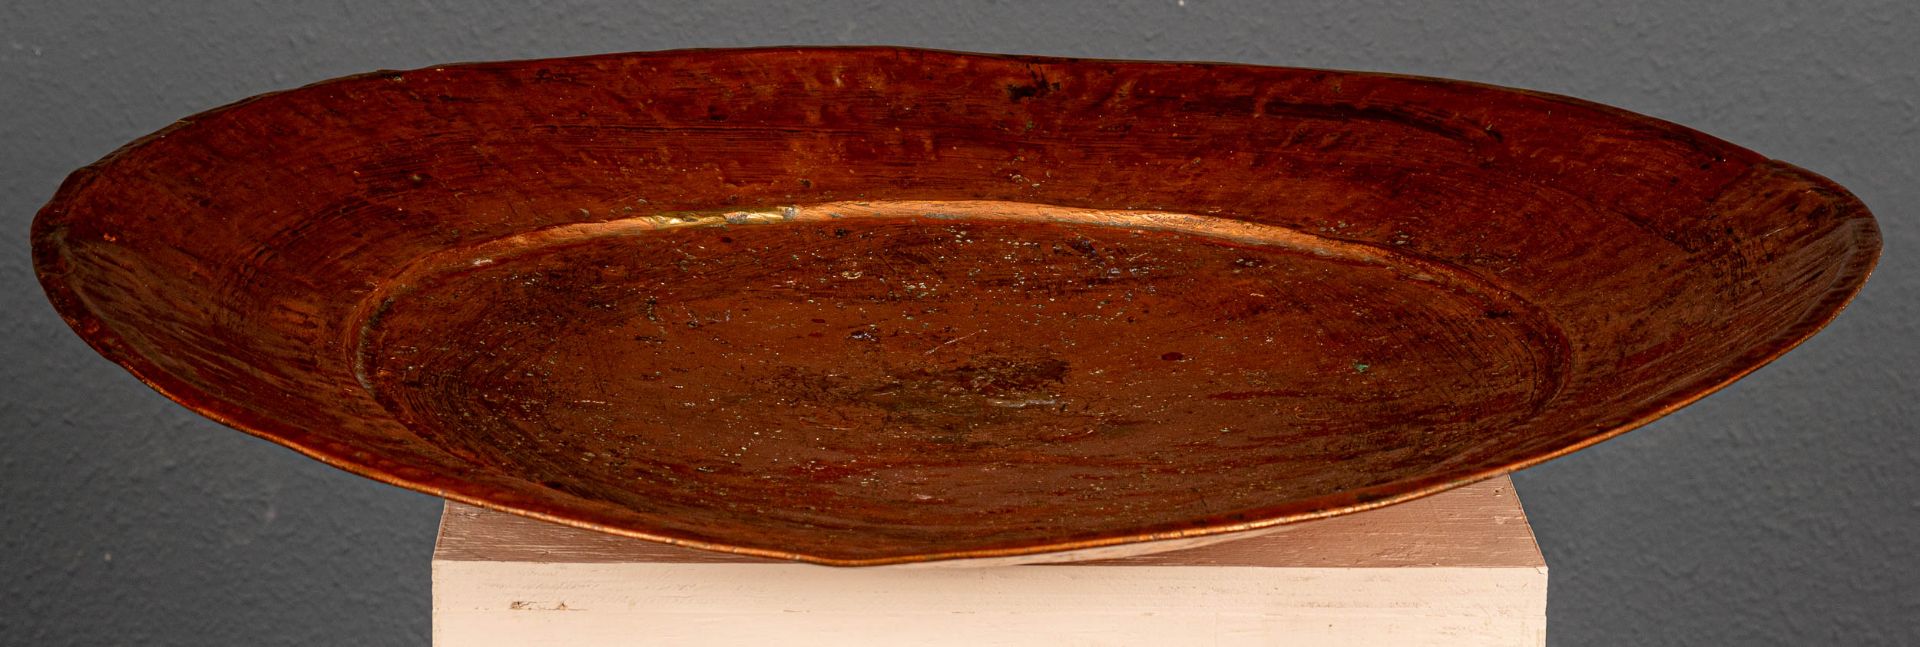 Sehr große Kupferplatte, bez.:"A 1 B", arabischer Raum, 20. Jhdt., Durchmesser ca. 71 cm. - Bild 3 aus 7